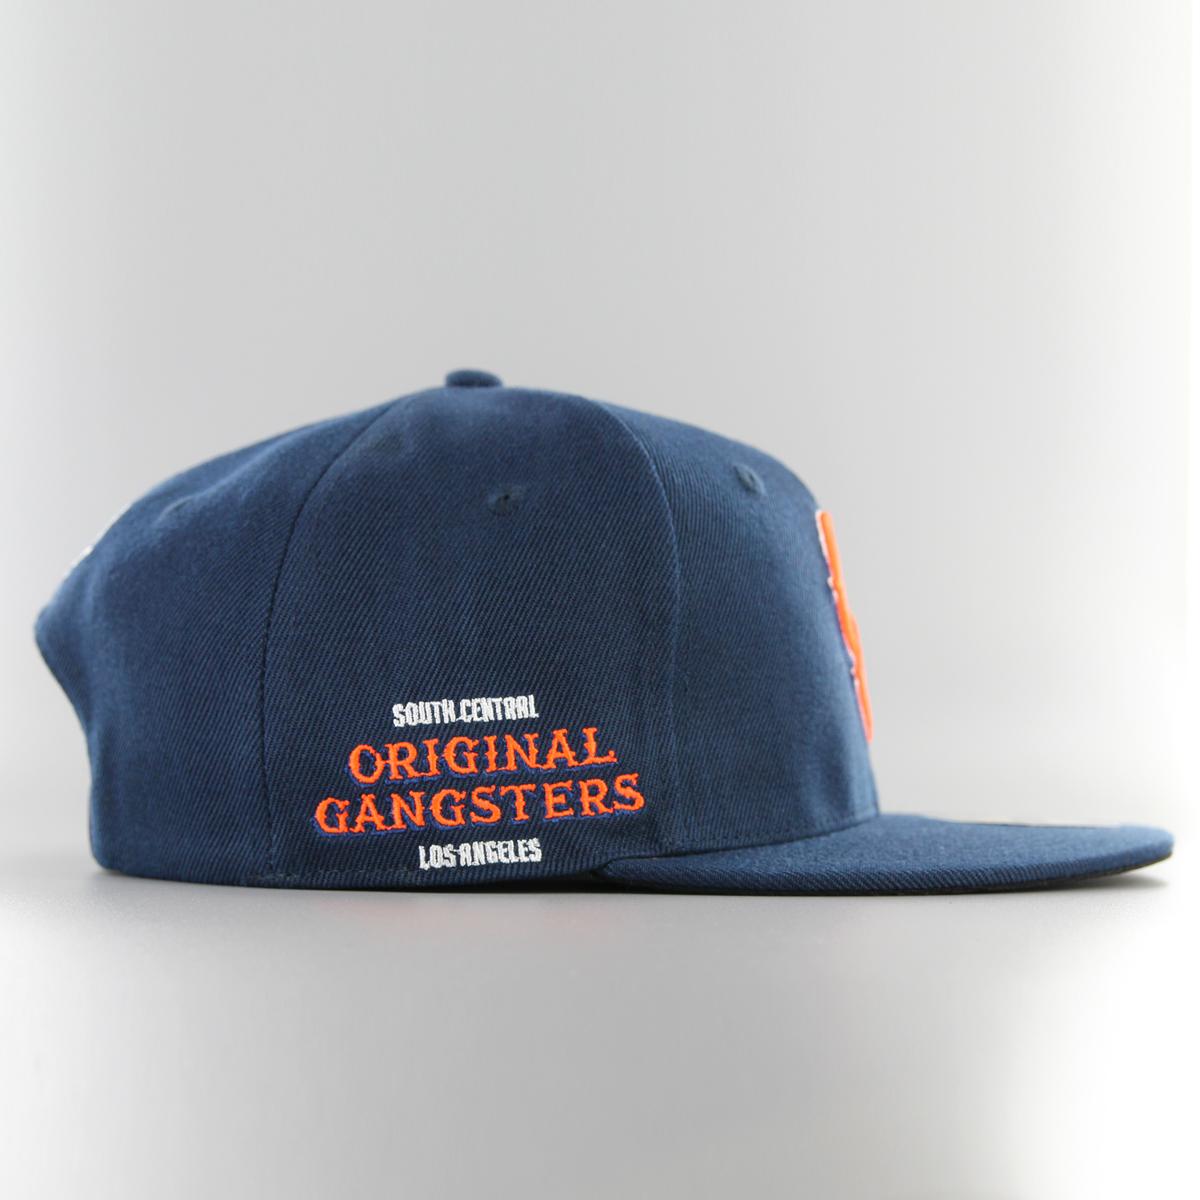 South Central Original Gangsters Snapback navy/orange